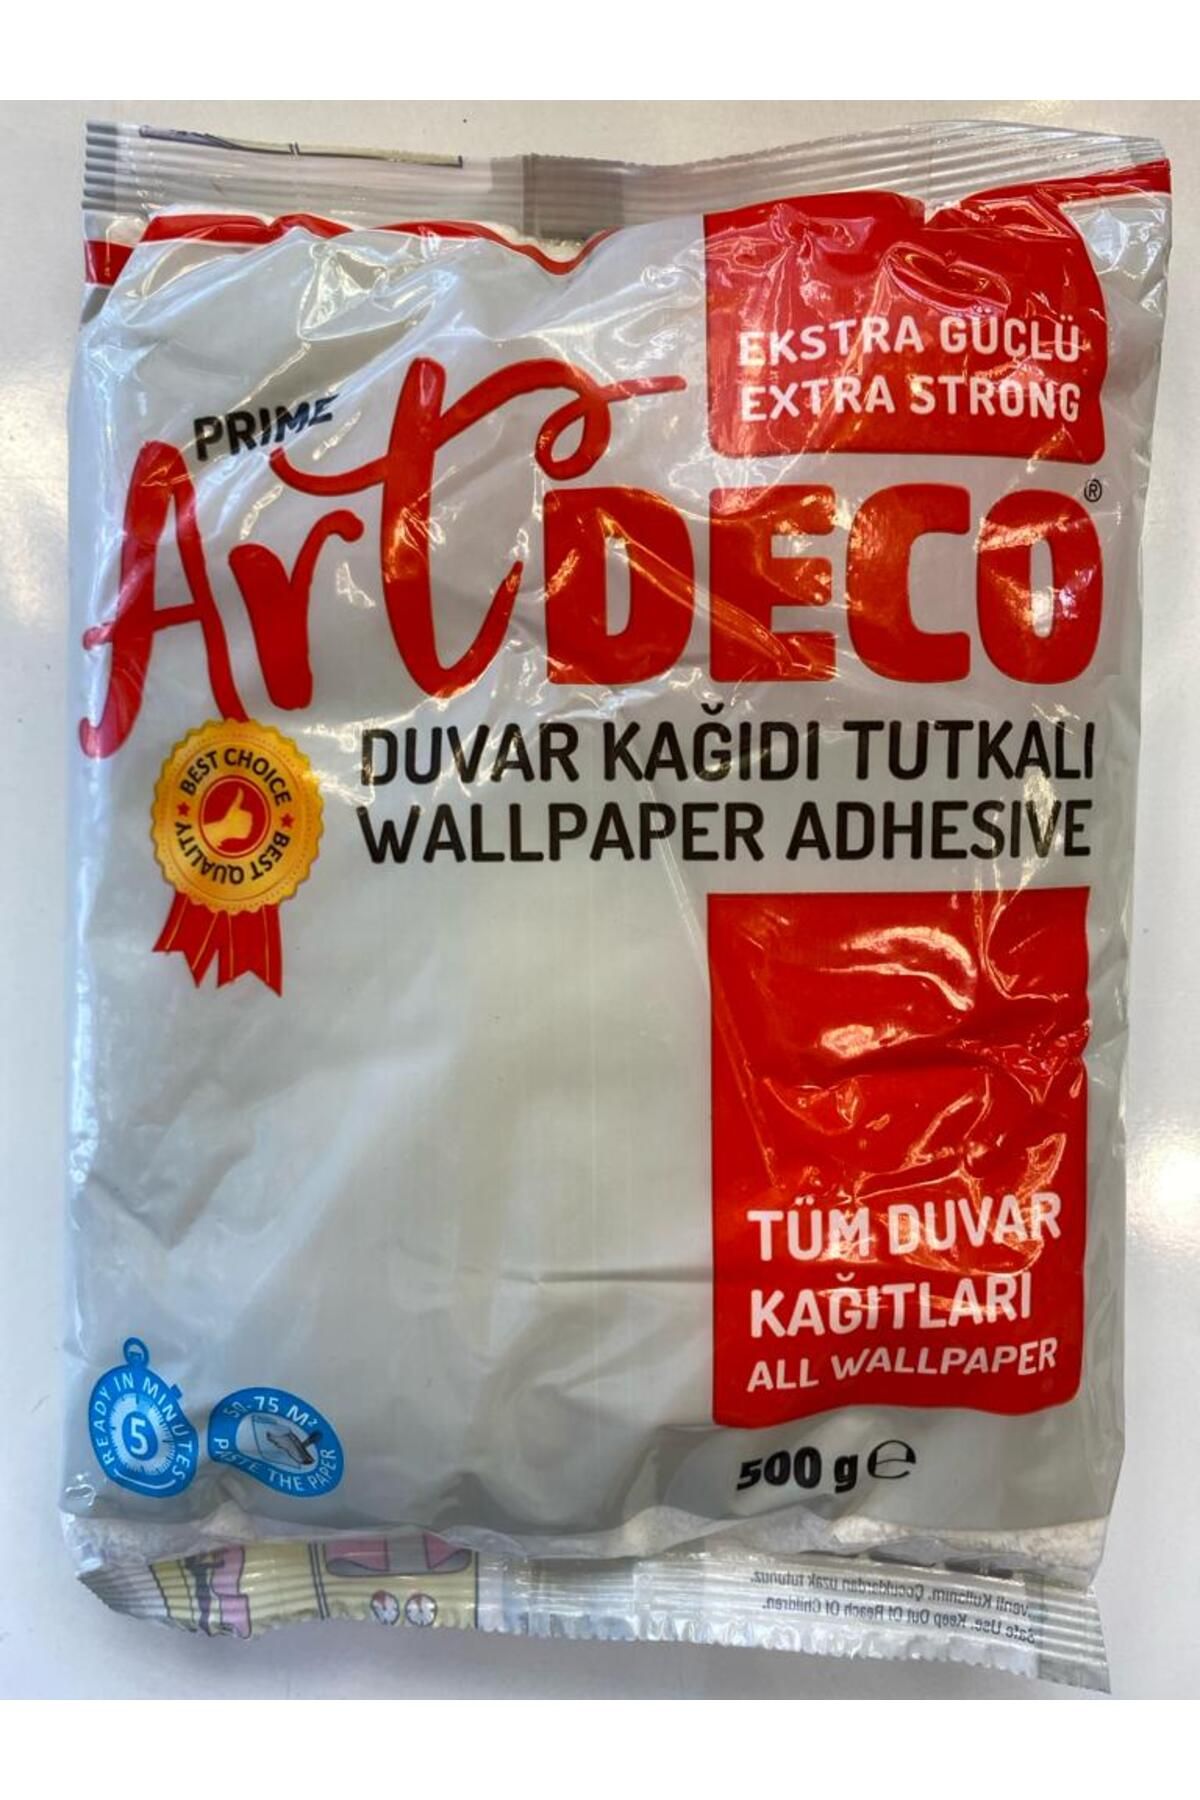 Artdeco ALWAYS TRADE ARTDECO duvar kağıdı tutkalı 500 gr